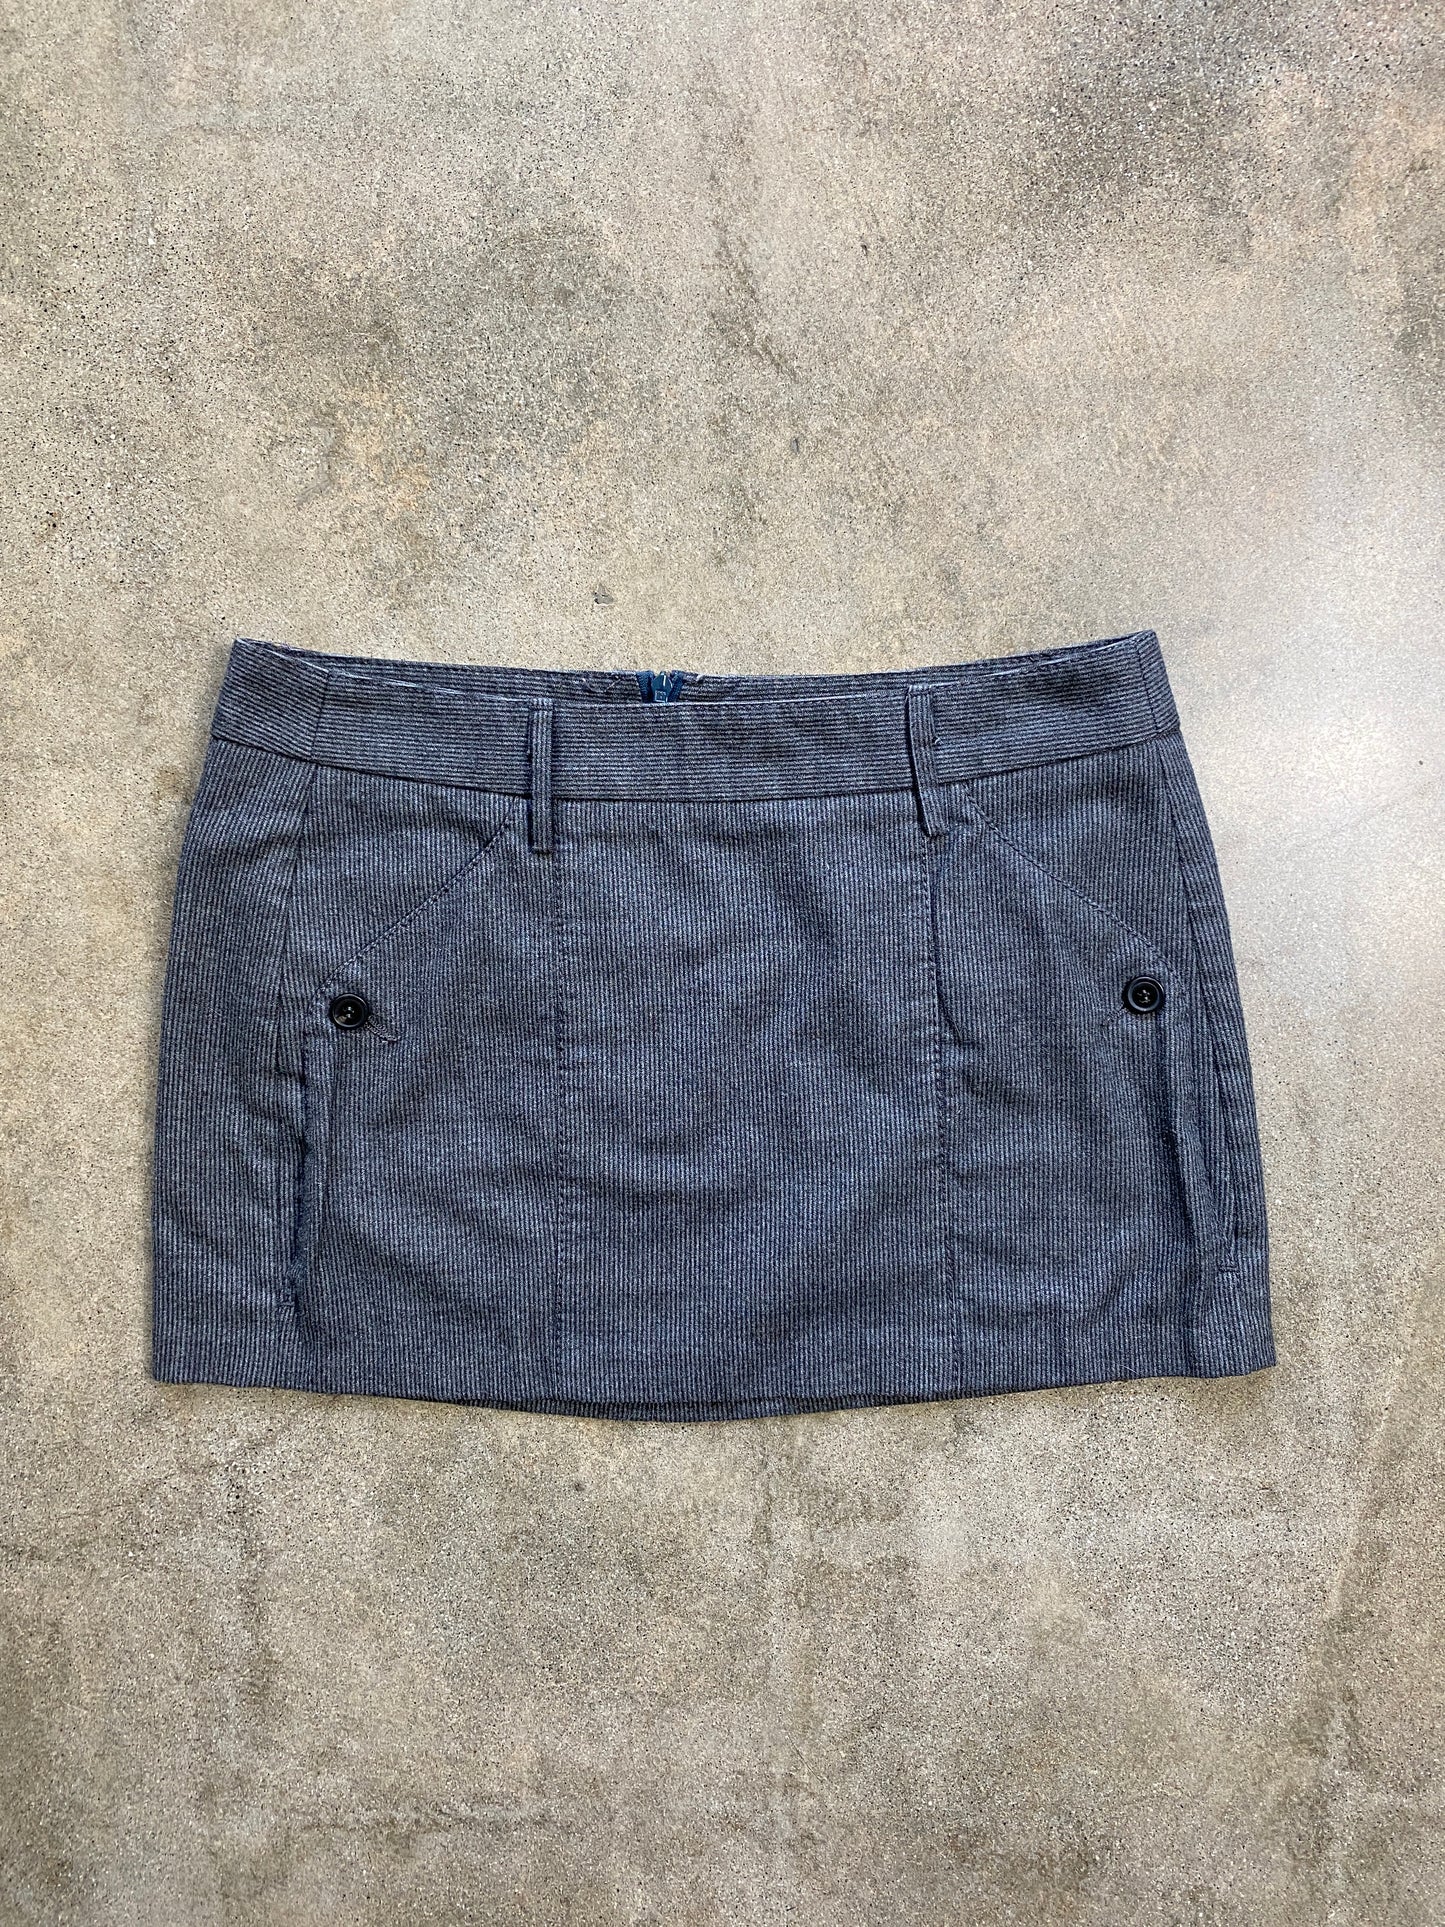 00's Gray Pinstripe Micro Mini Skirt